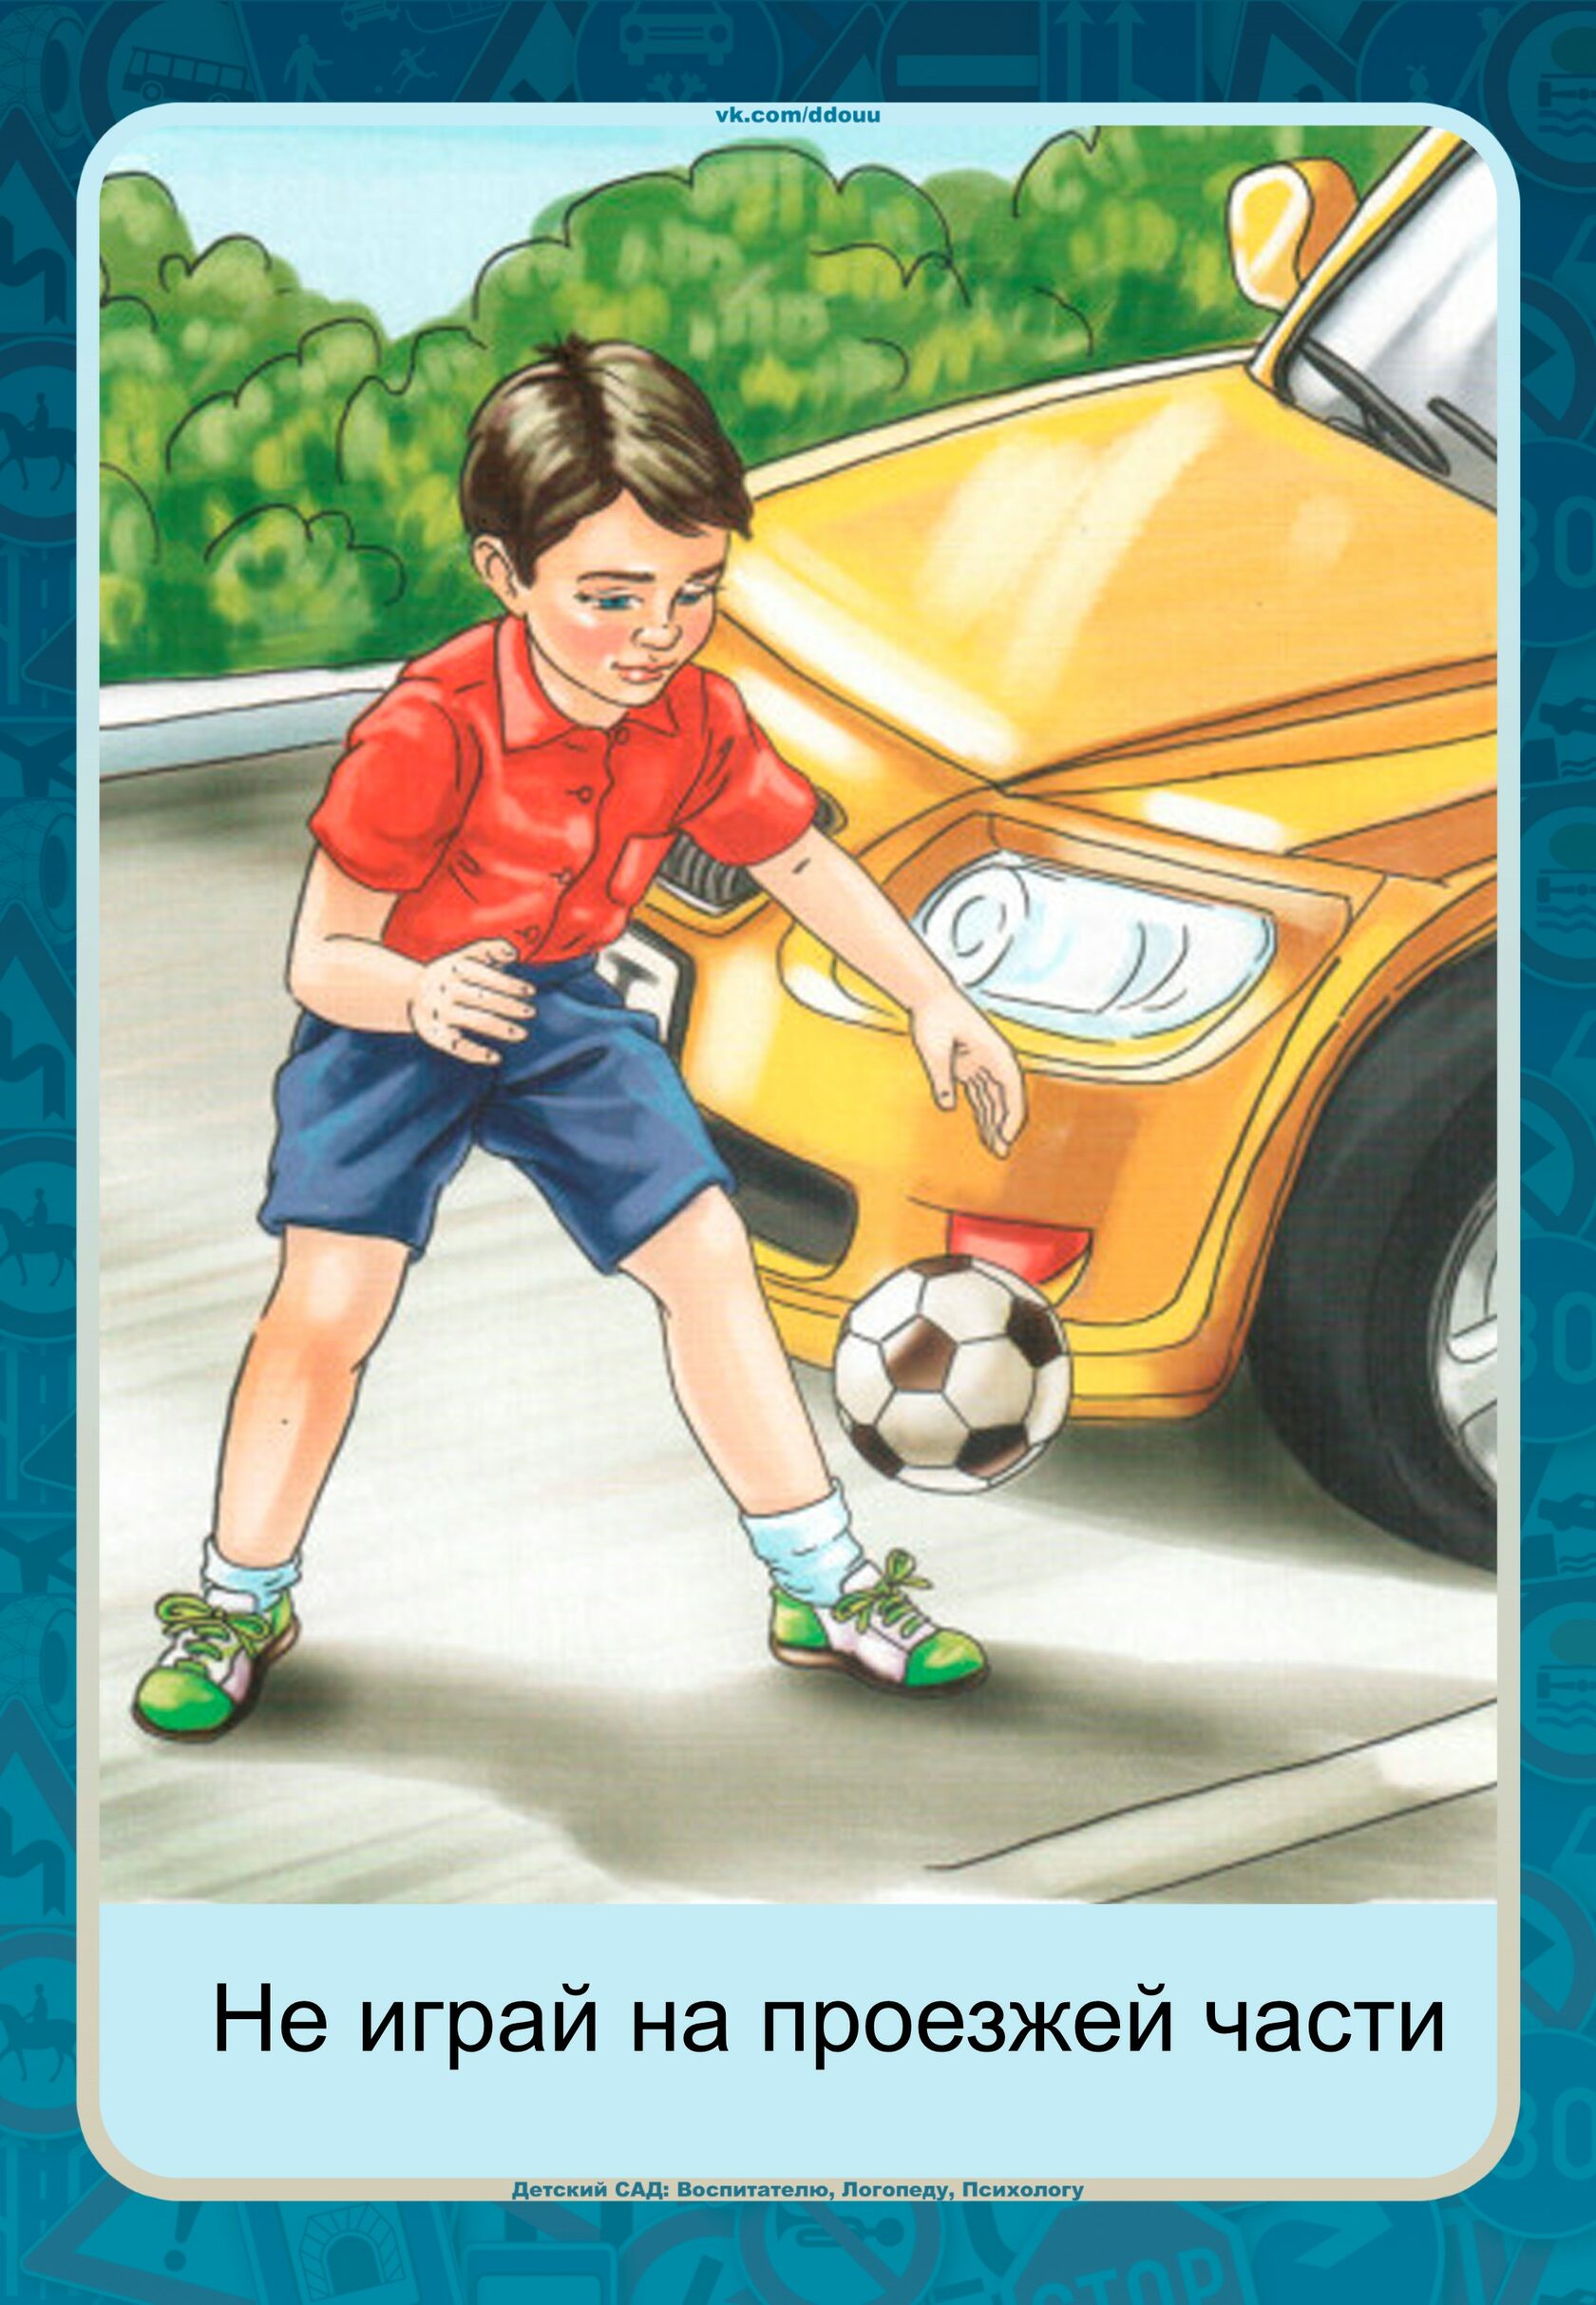 Мальчик с мячом на дороге